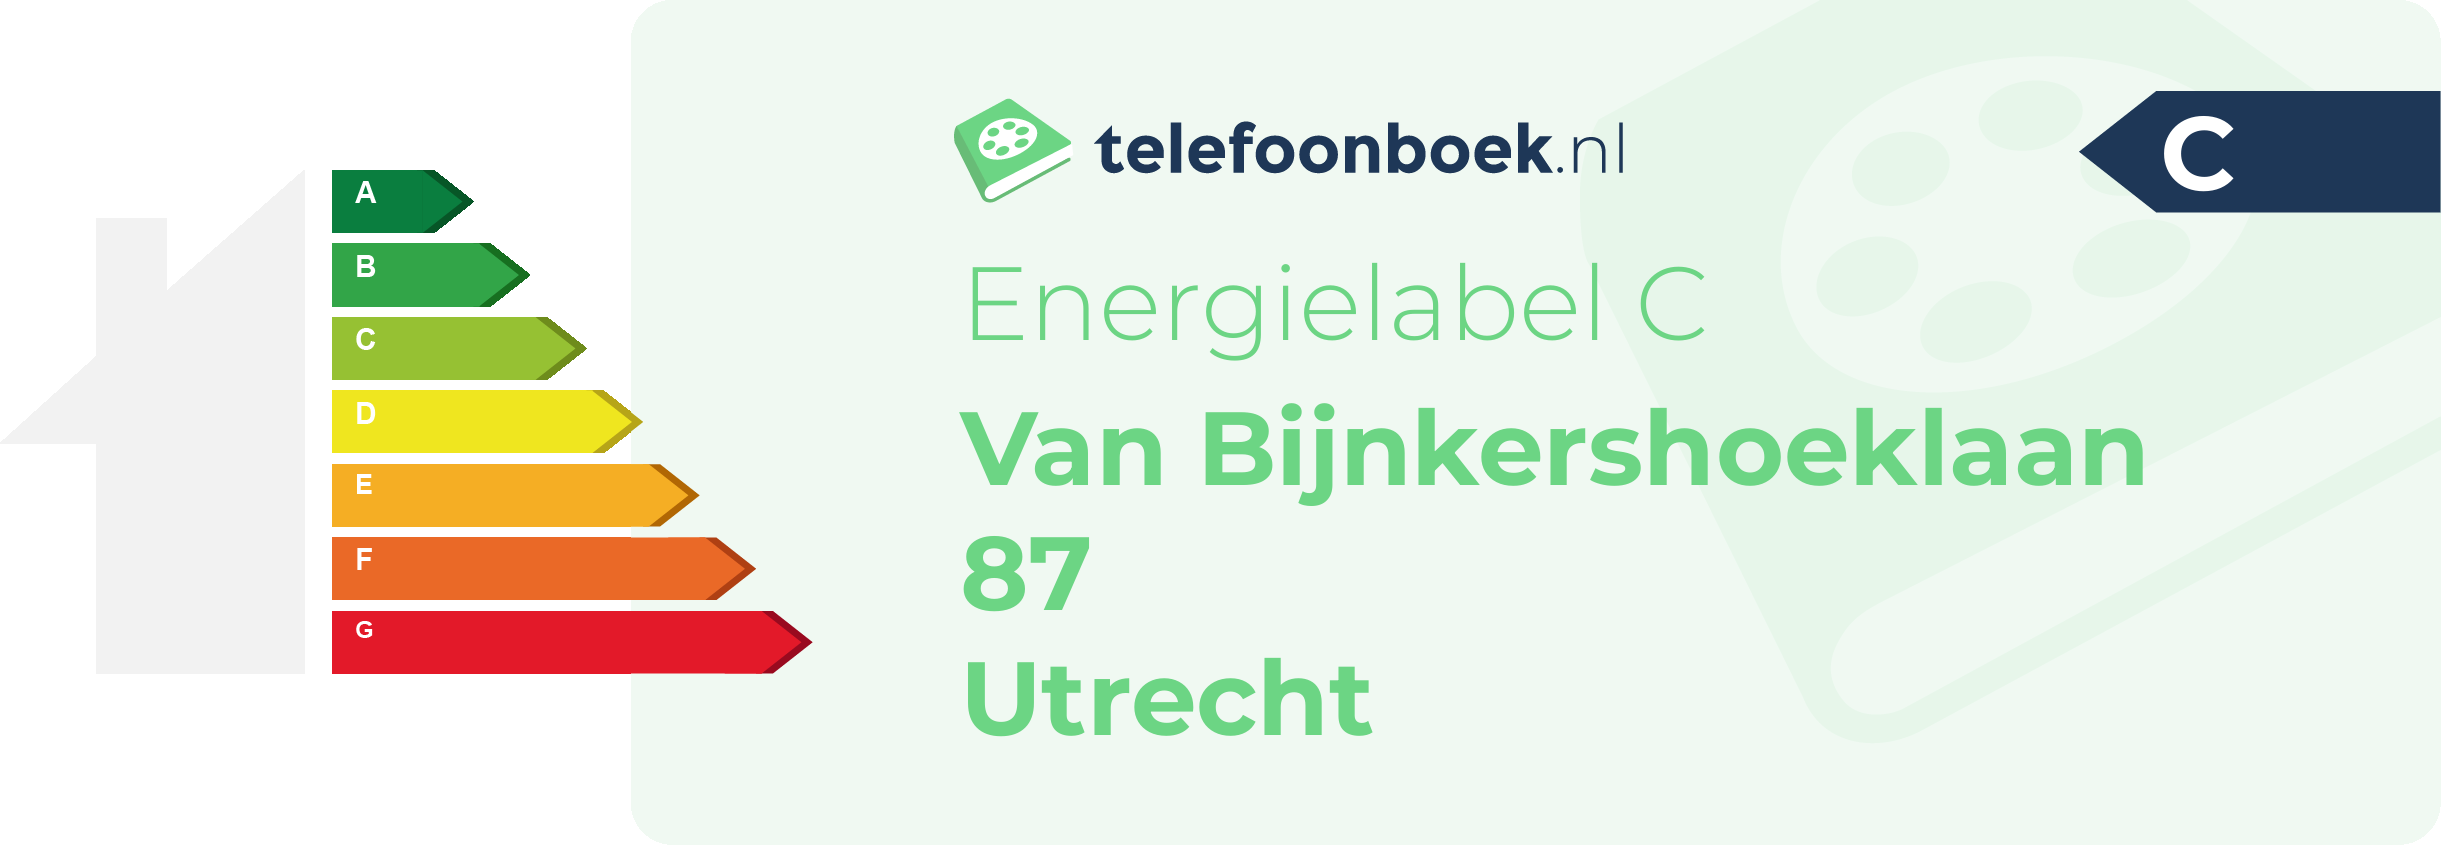 Energielabel Van Bijnkershoeklaan 87 Utrecht